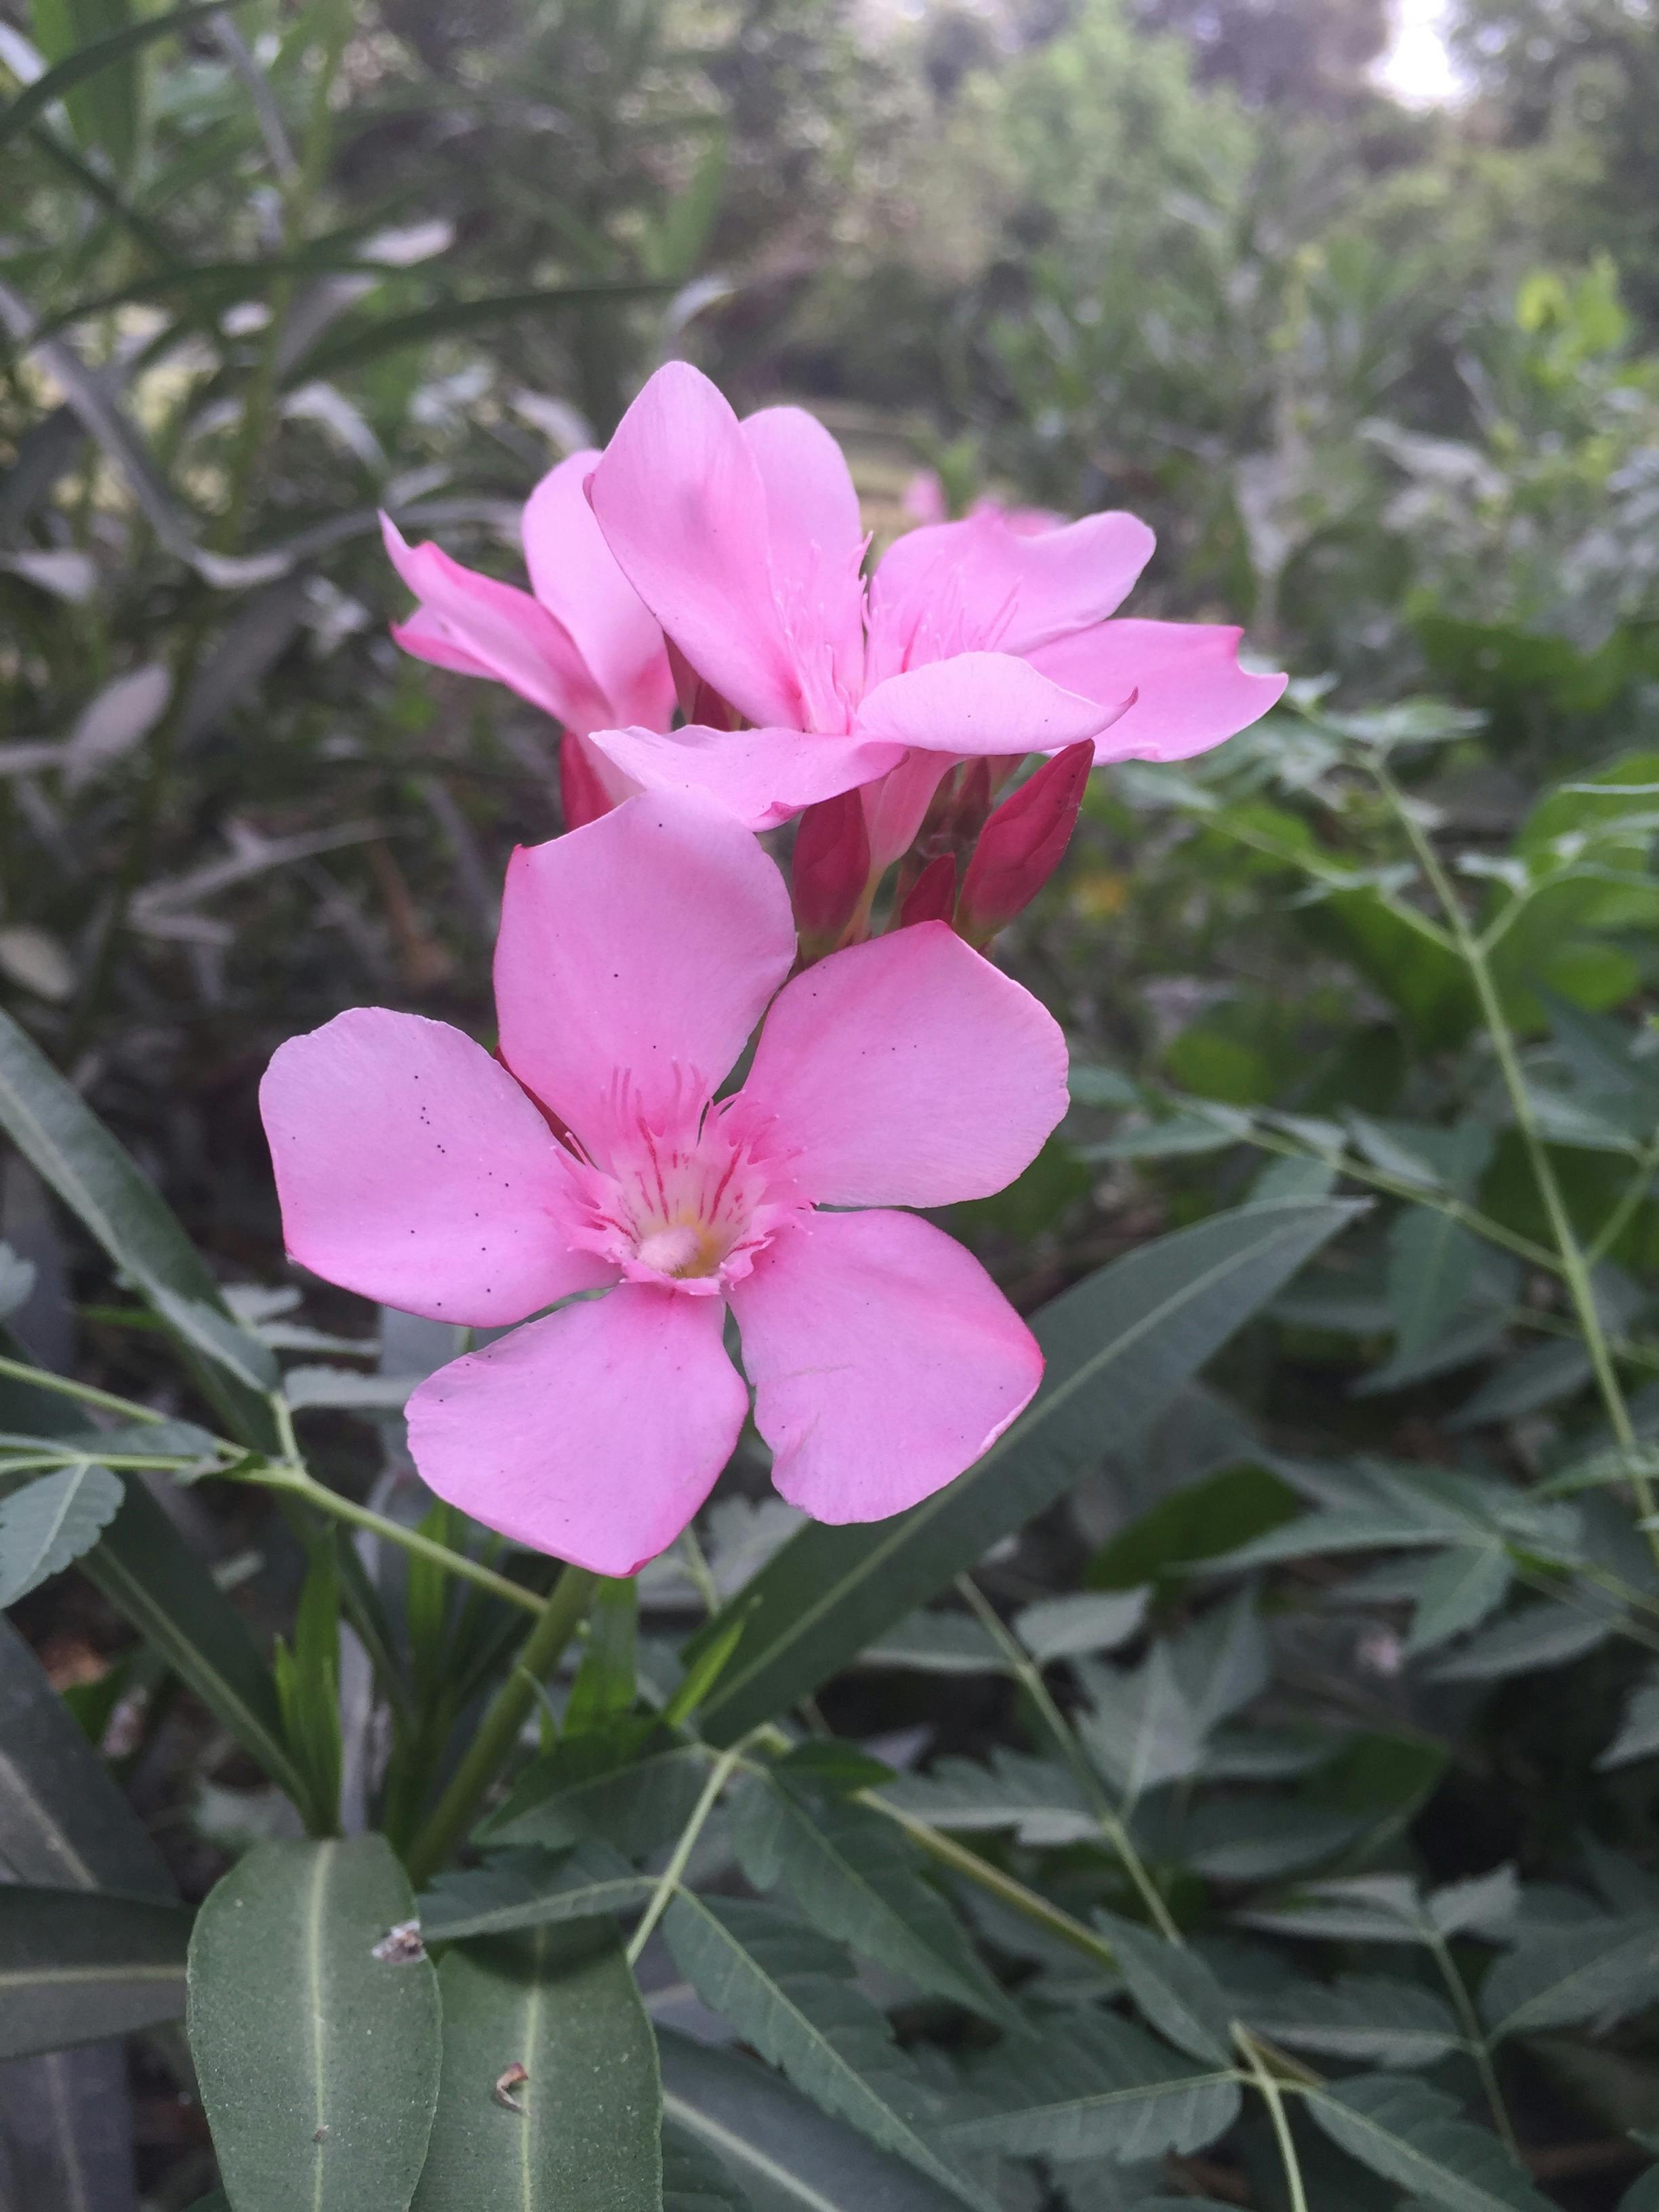 Free stock photo of flower, Gaedening, nature